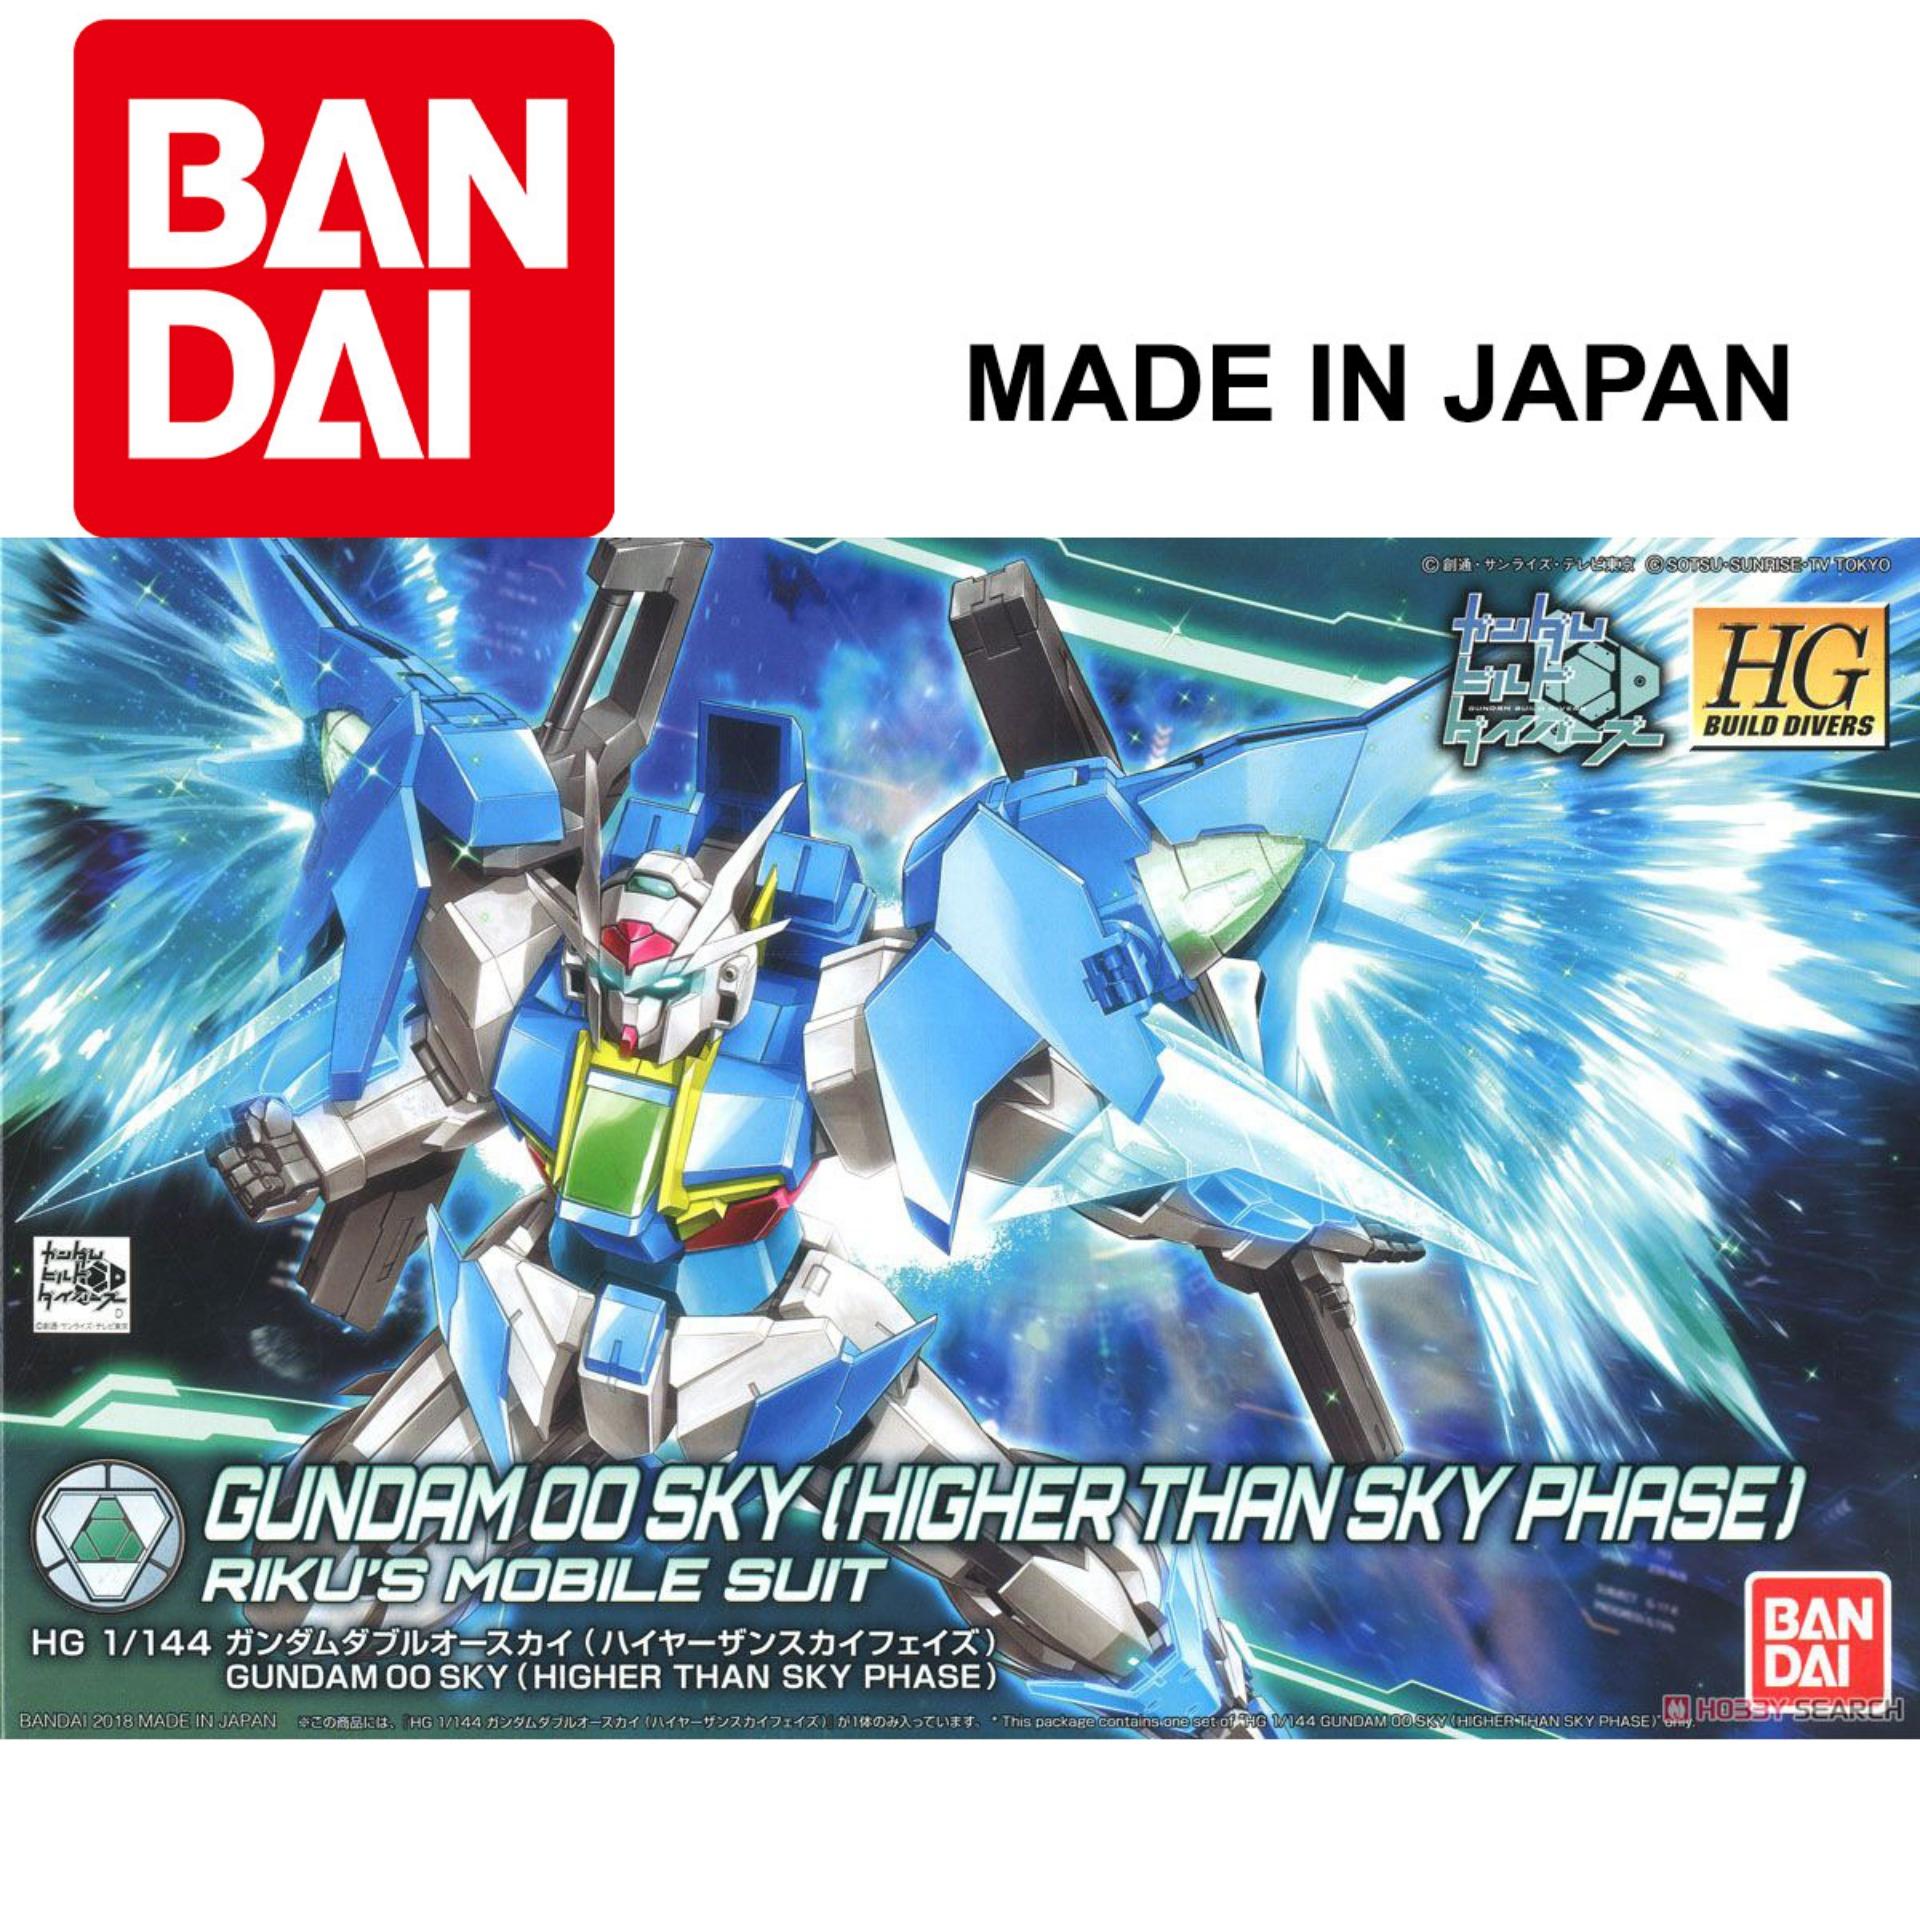 Mô hình Gundam Bandai 1/144 HGBD014-SP Gundam 00 Sky (Higher Than Skyphase) Serie HG Build Divers